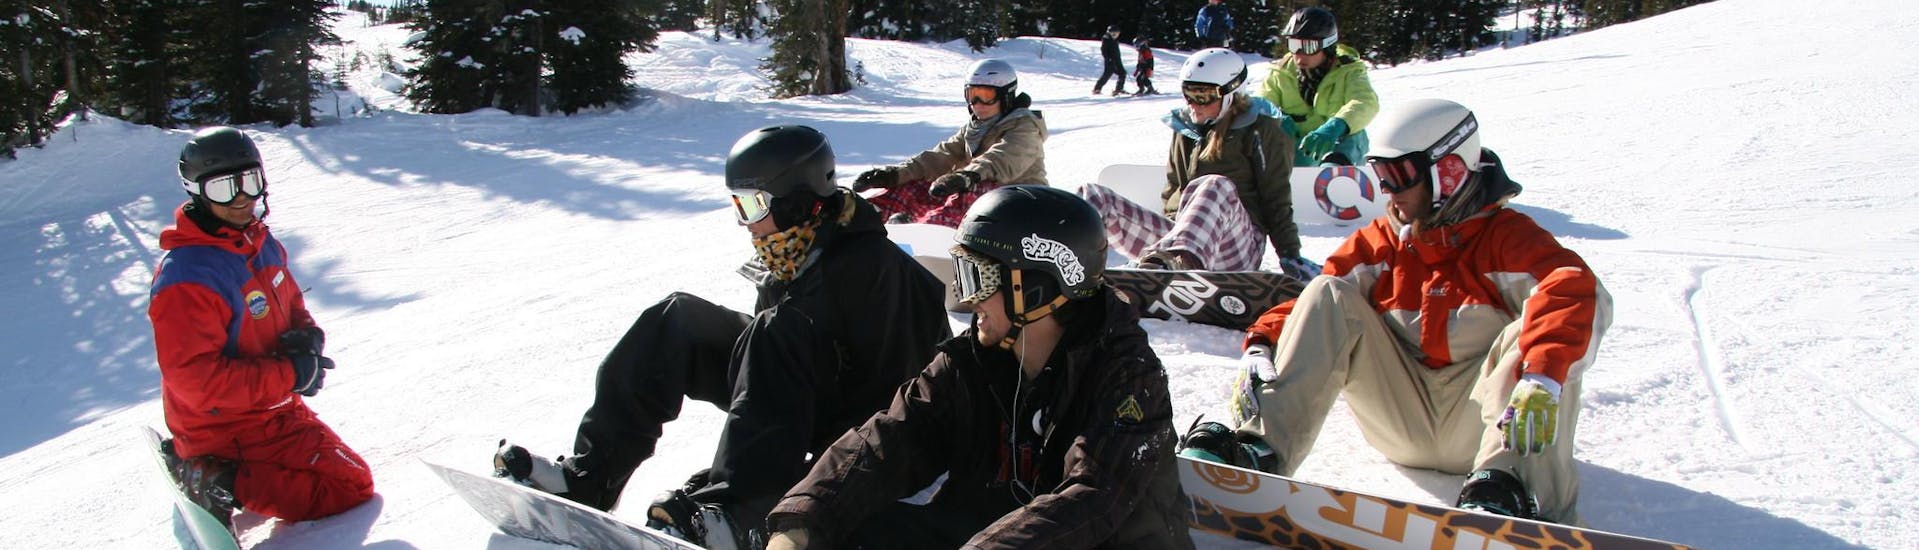 Eine Gruppe von Snowboardern, die während eines Snowboardkurses für Anfänger gemeinsam Spaß haben